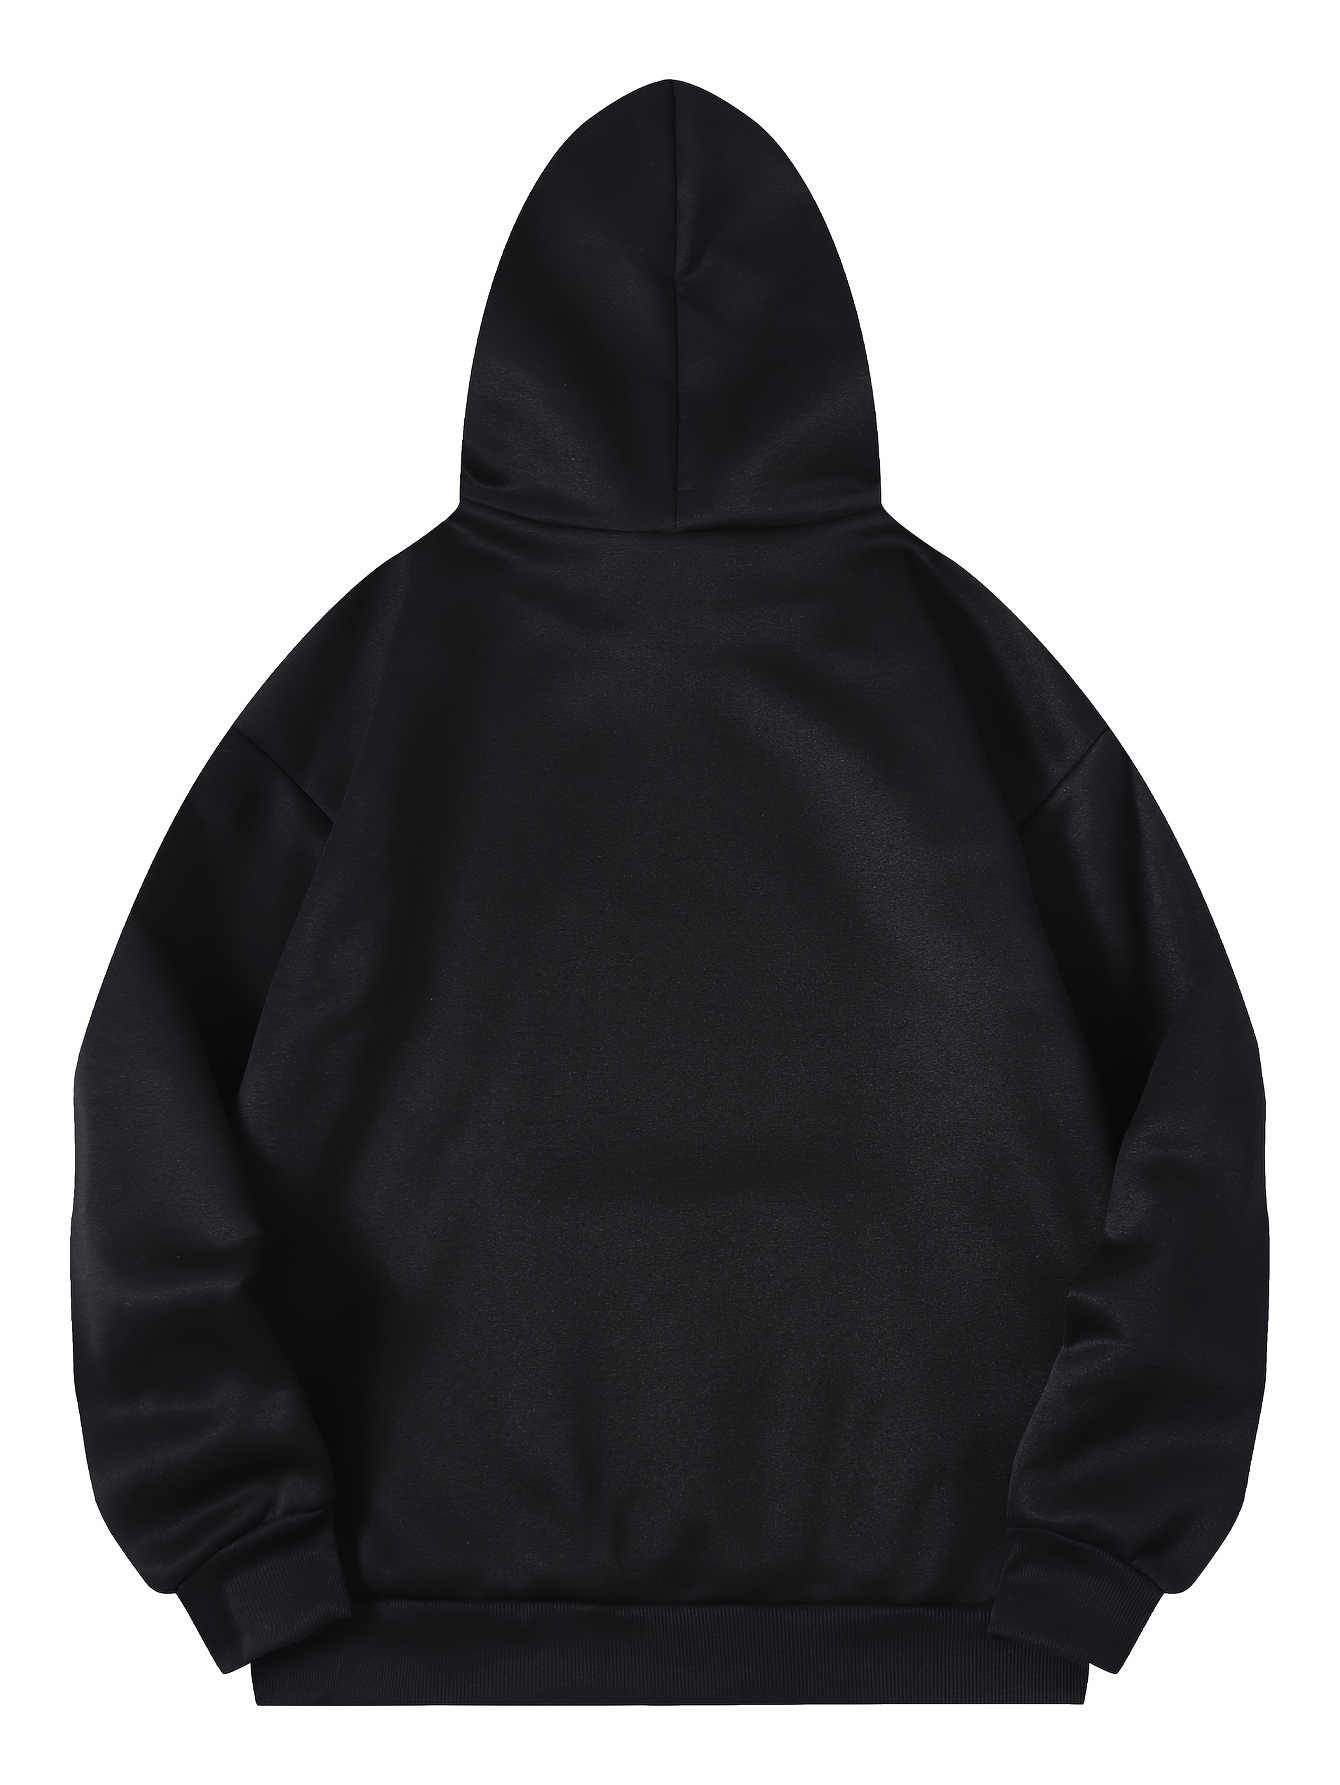 letter print kangaroo pocket hoodie casual long sleeve drawstring hoodies sweatshirt womens clothing details 31